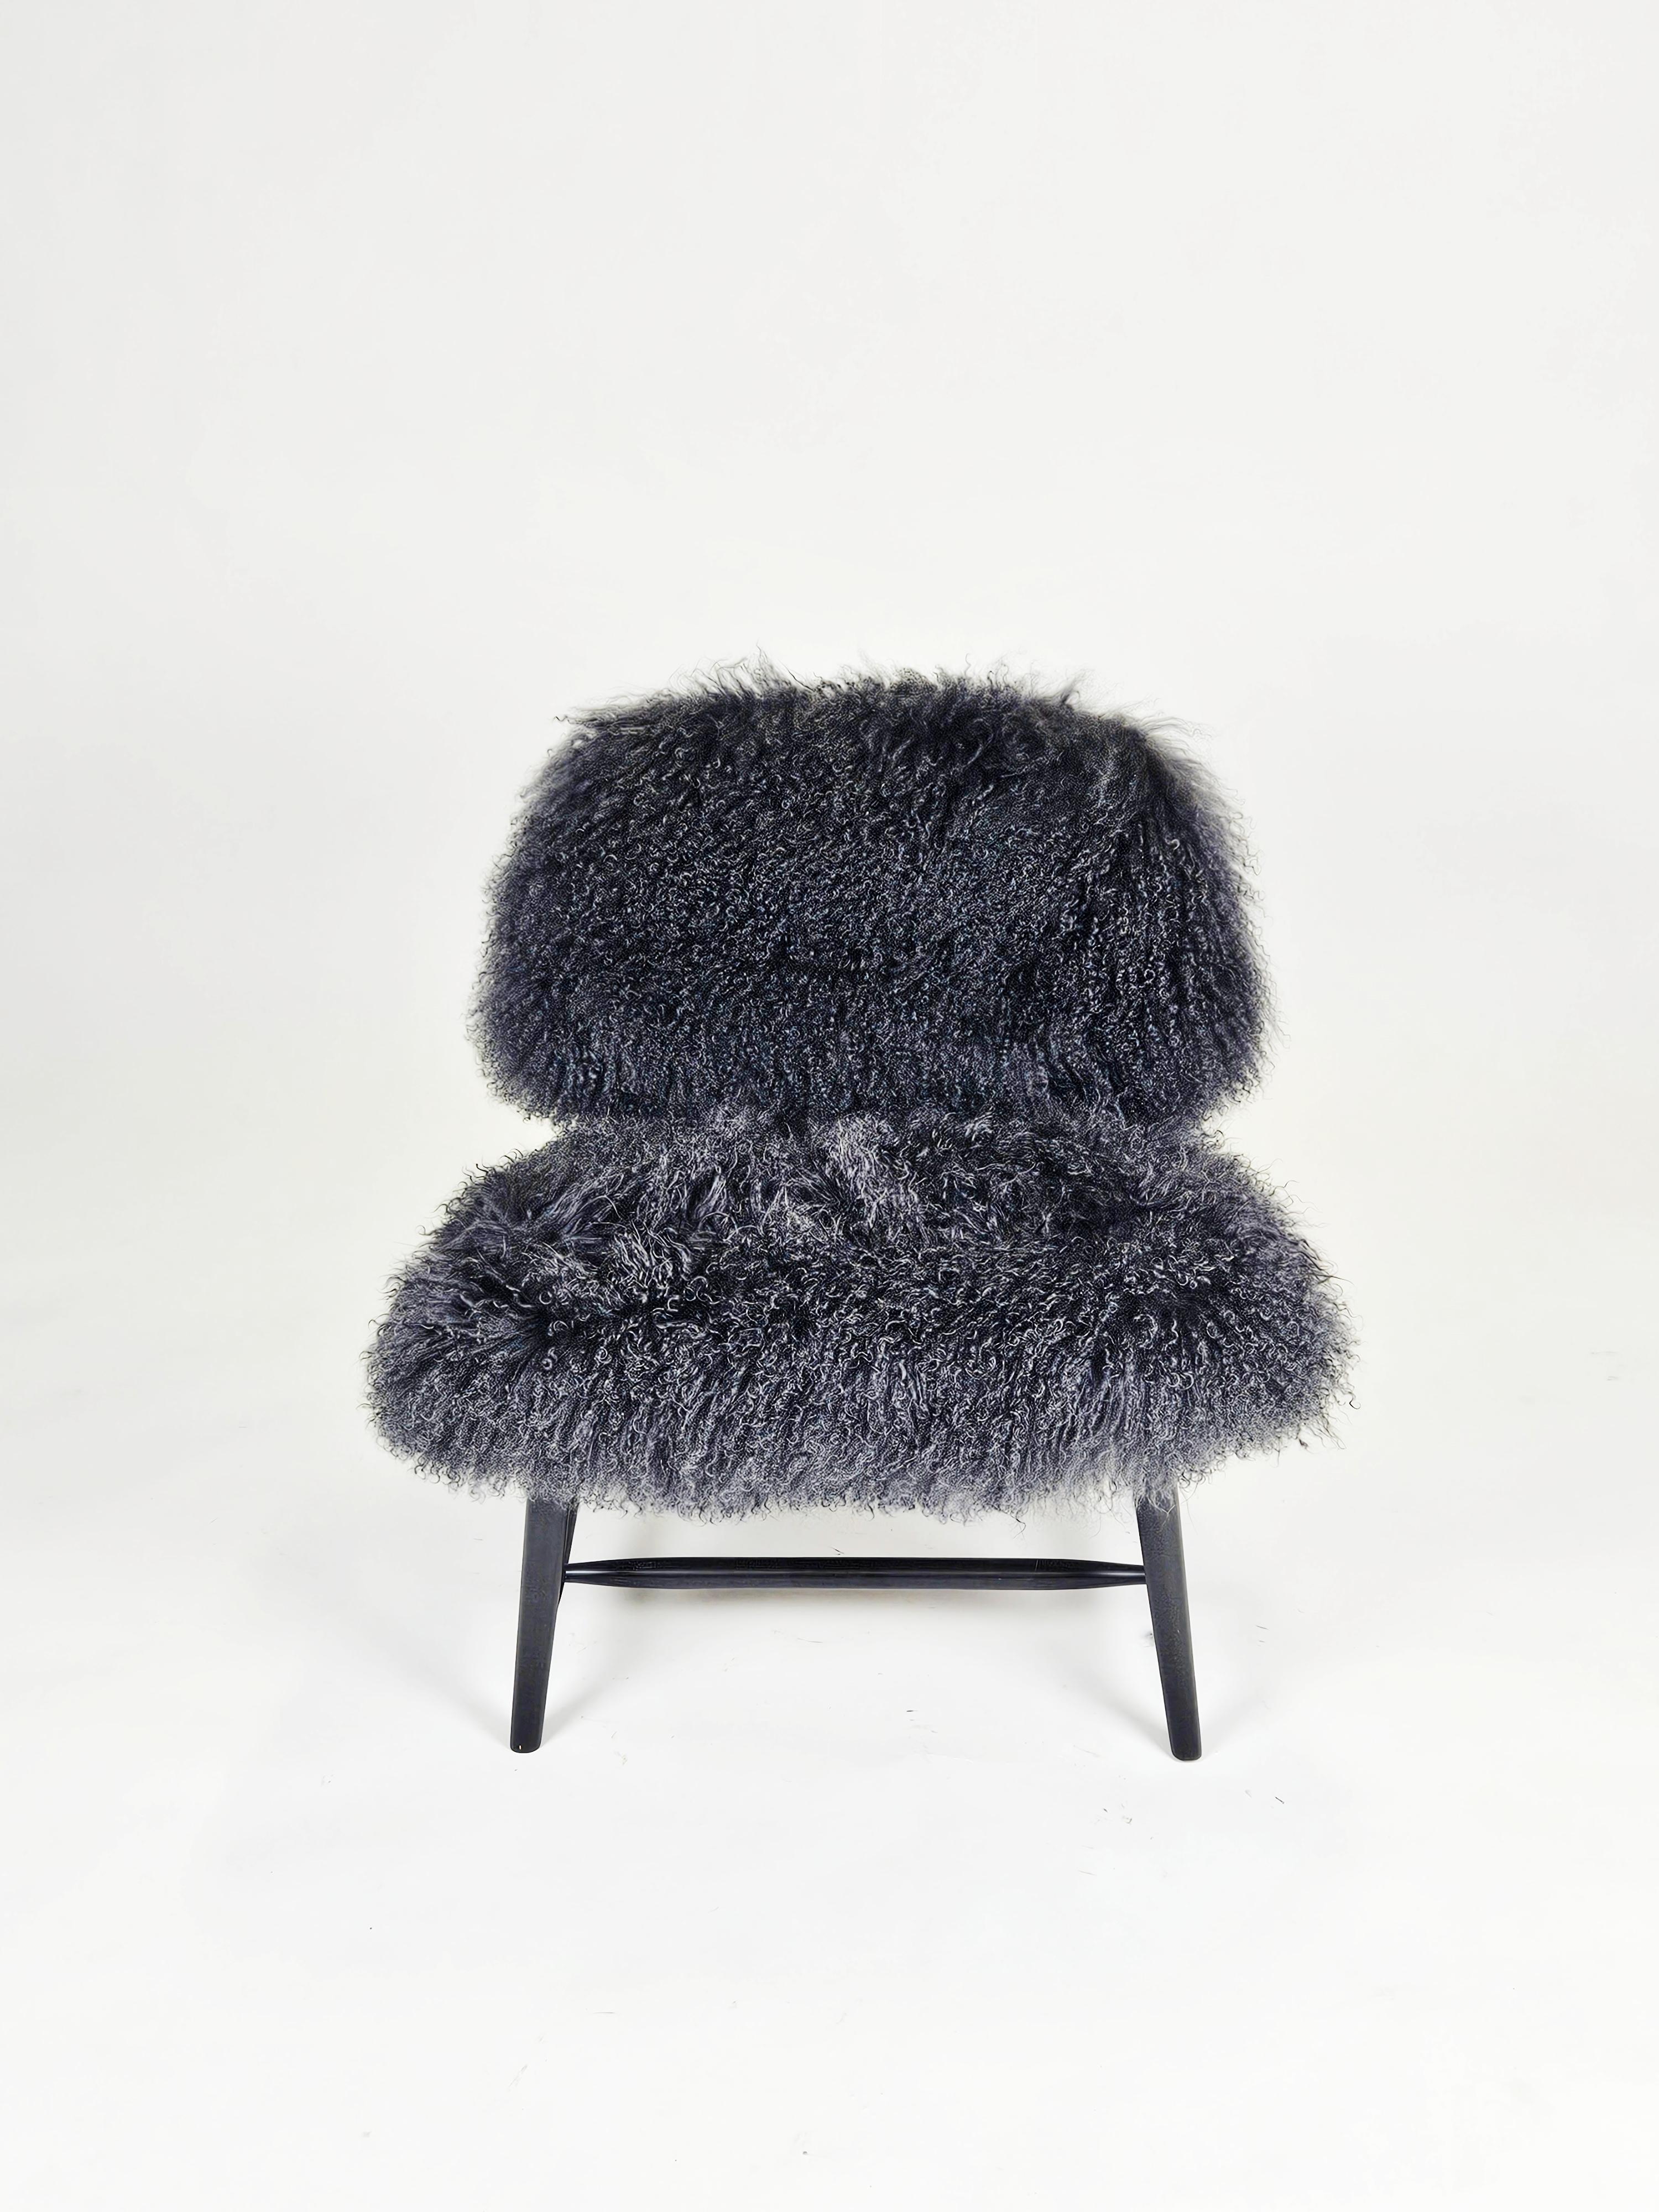 Sheepskin Scandinavian modern 'Teve' chairs by Alf Svensson for Bra Bohag, Sweden, 1950s For Sale